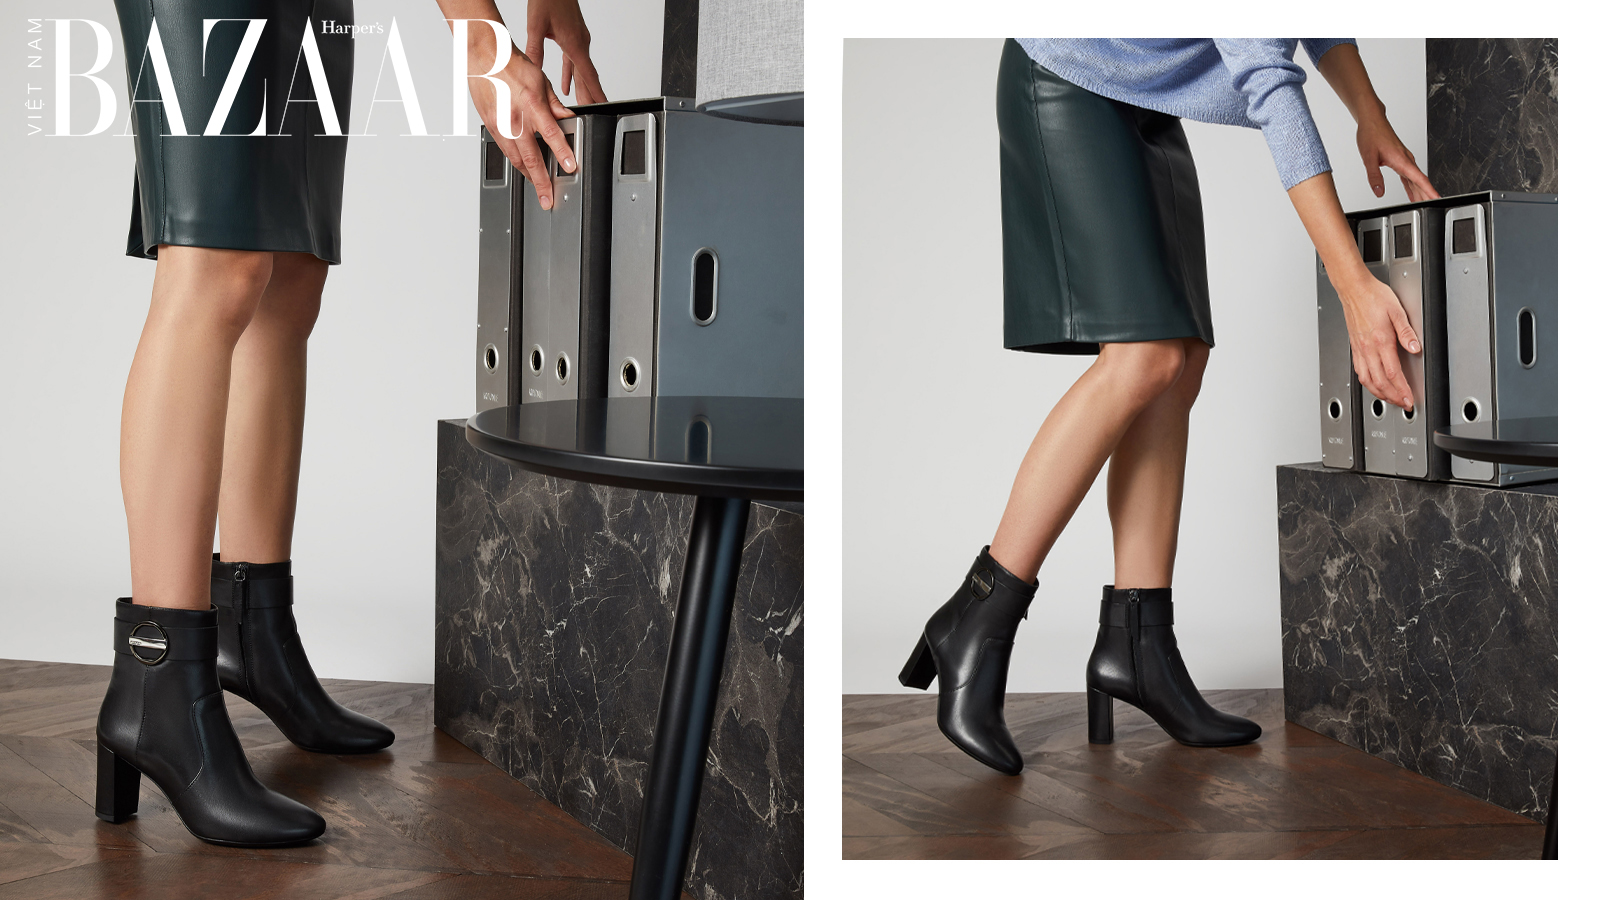 Harper's Bazaar_Geox ra mắt ankle boots thời thượng cho ngày hè_04